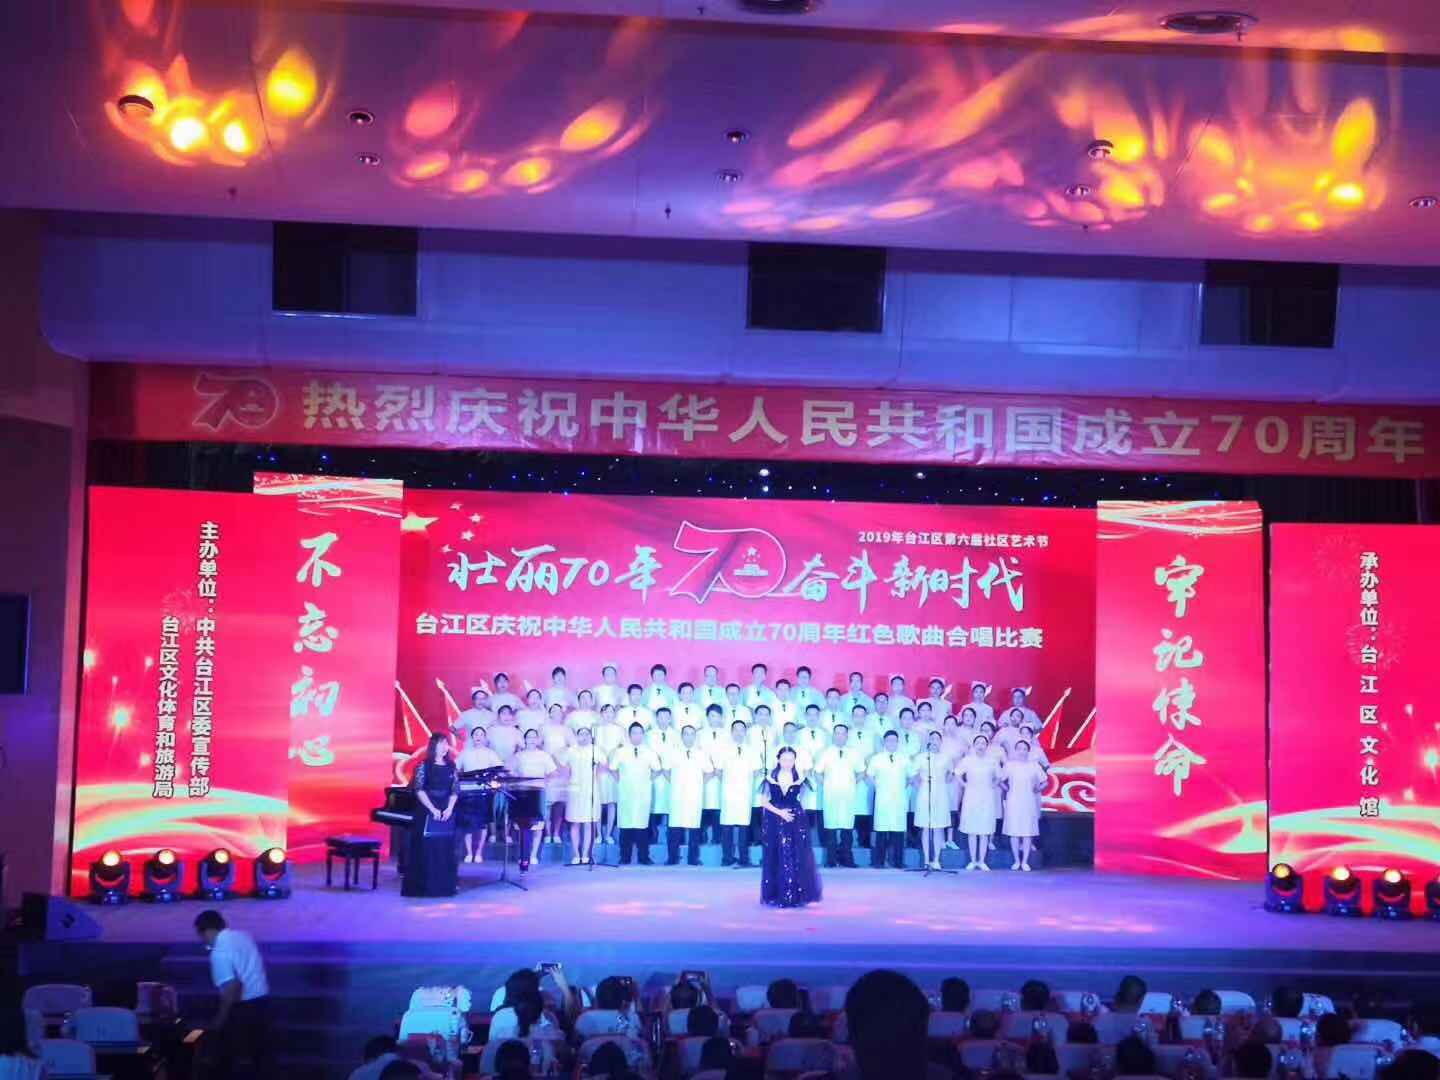 台江区举办庆祝中华人民共和国成立70周年红色歌曲比赛